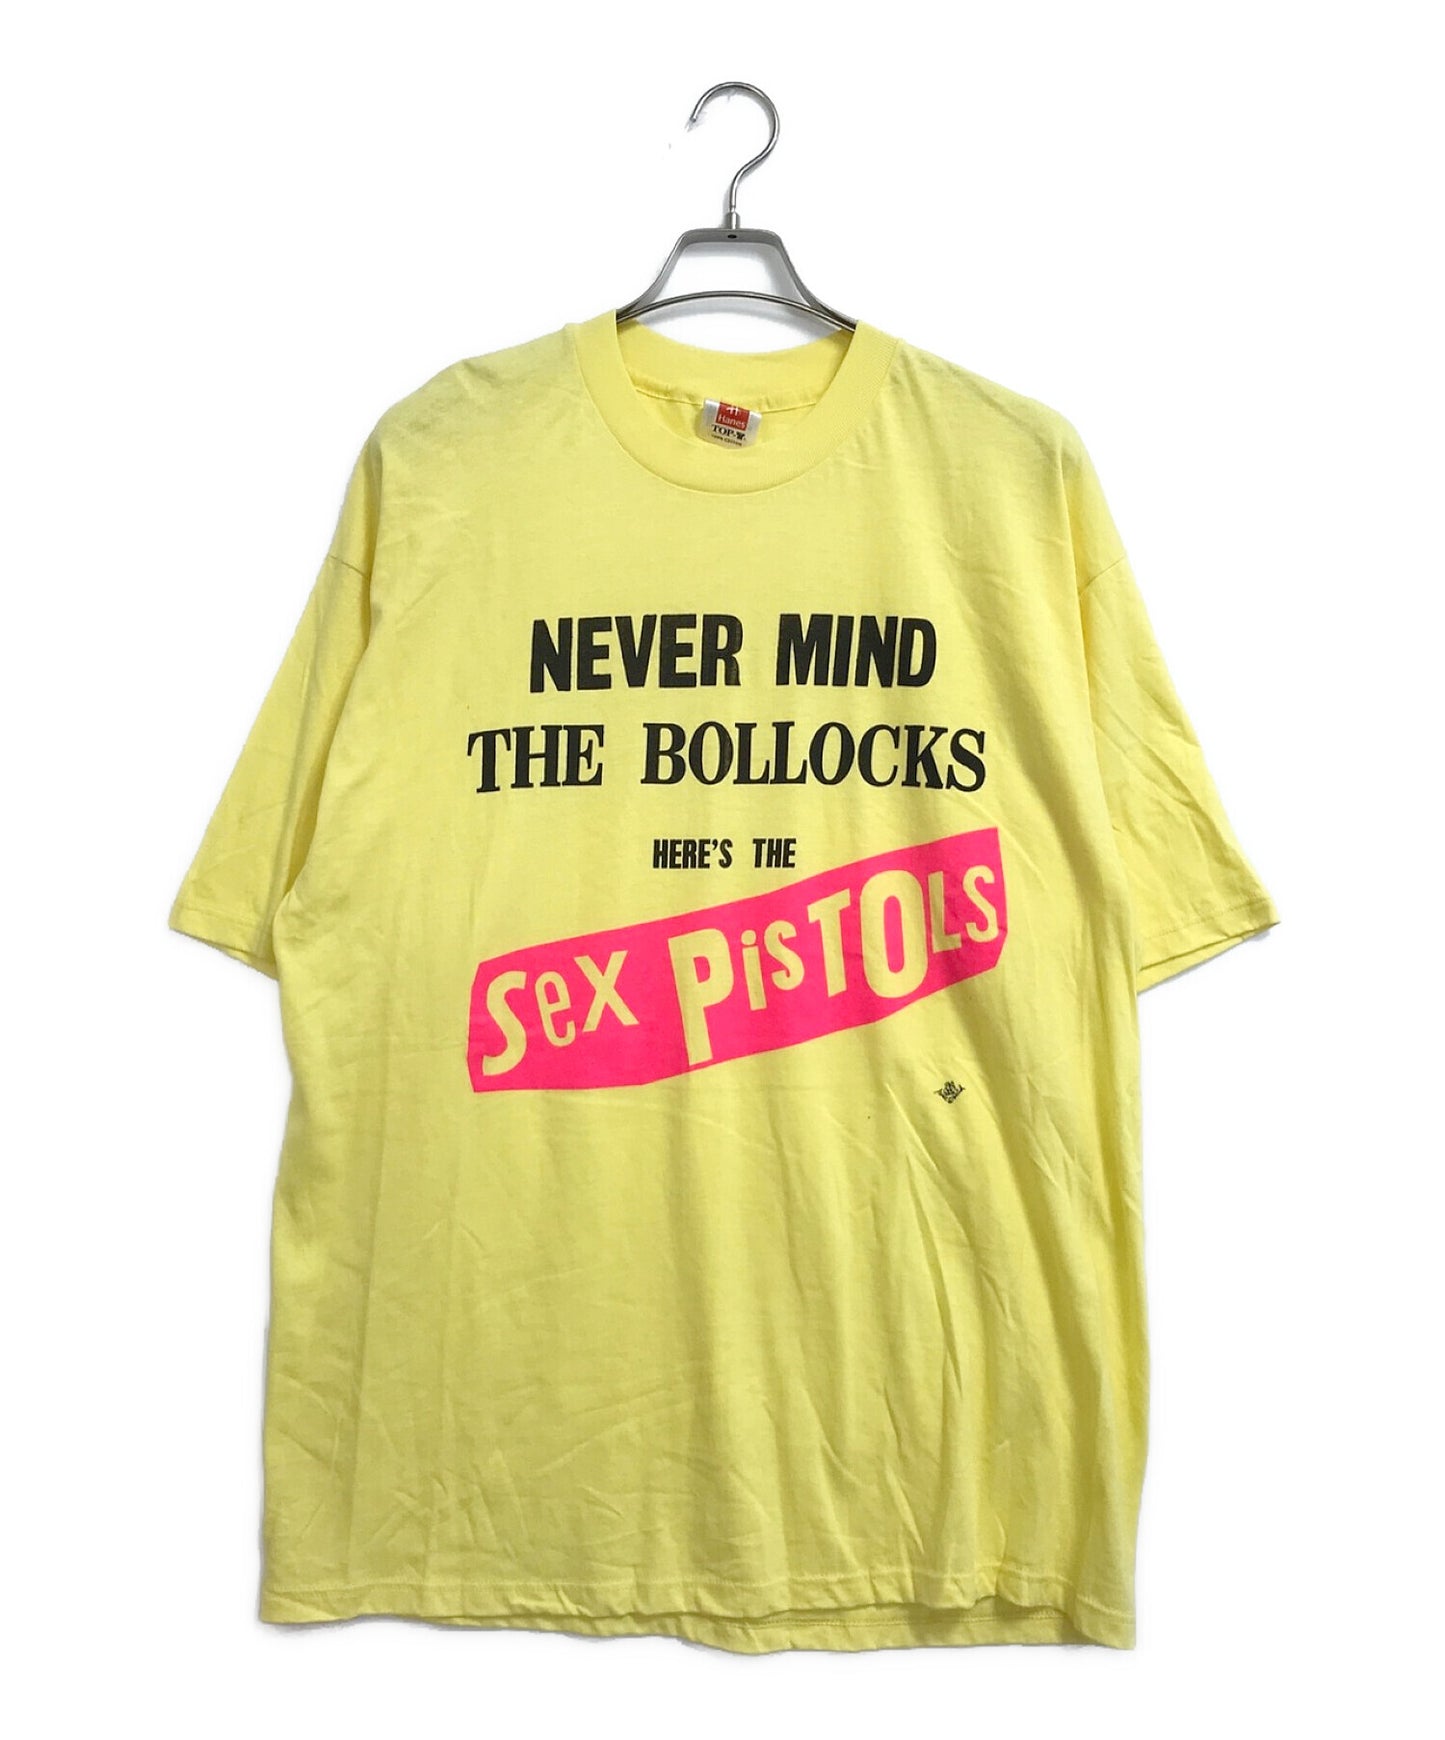 섹스 피스톨 밴드 티셔츠 "Never Mind"